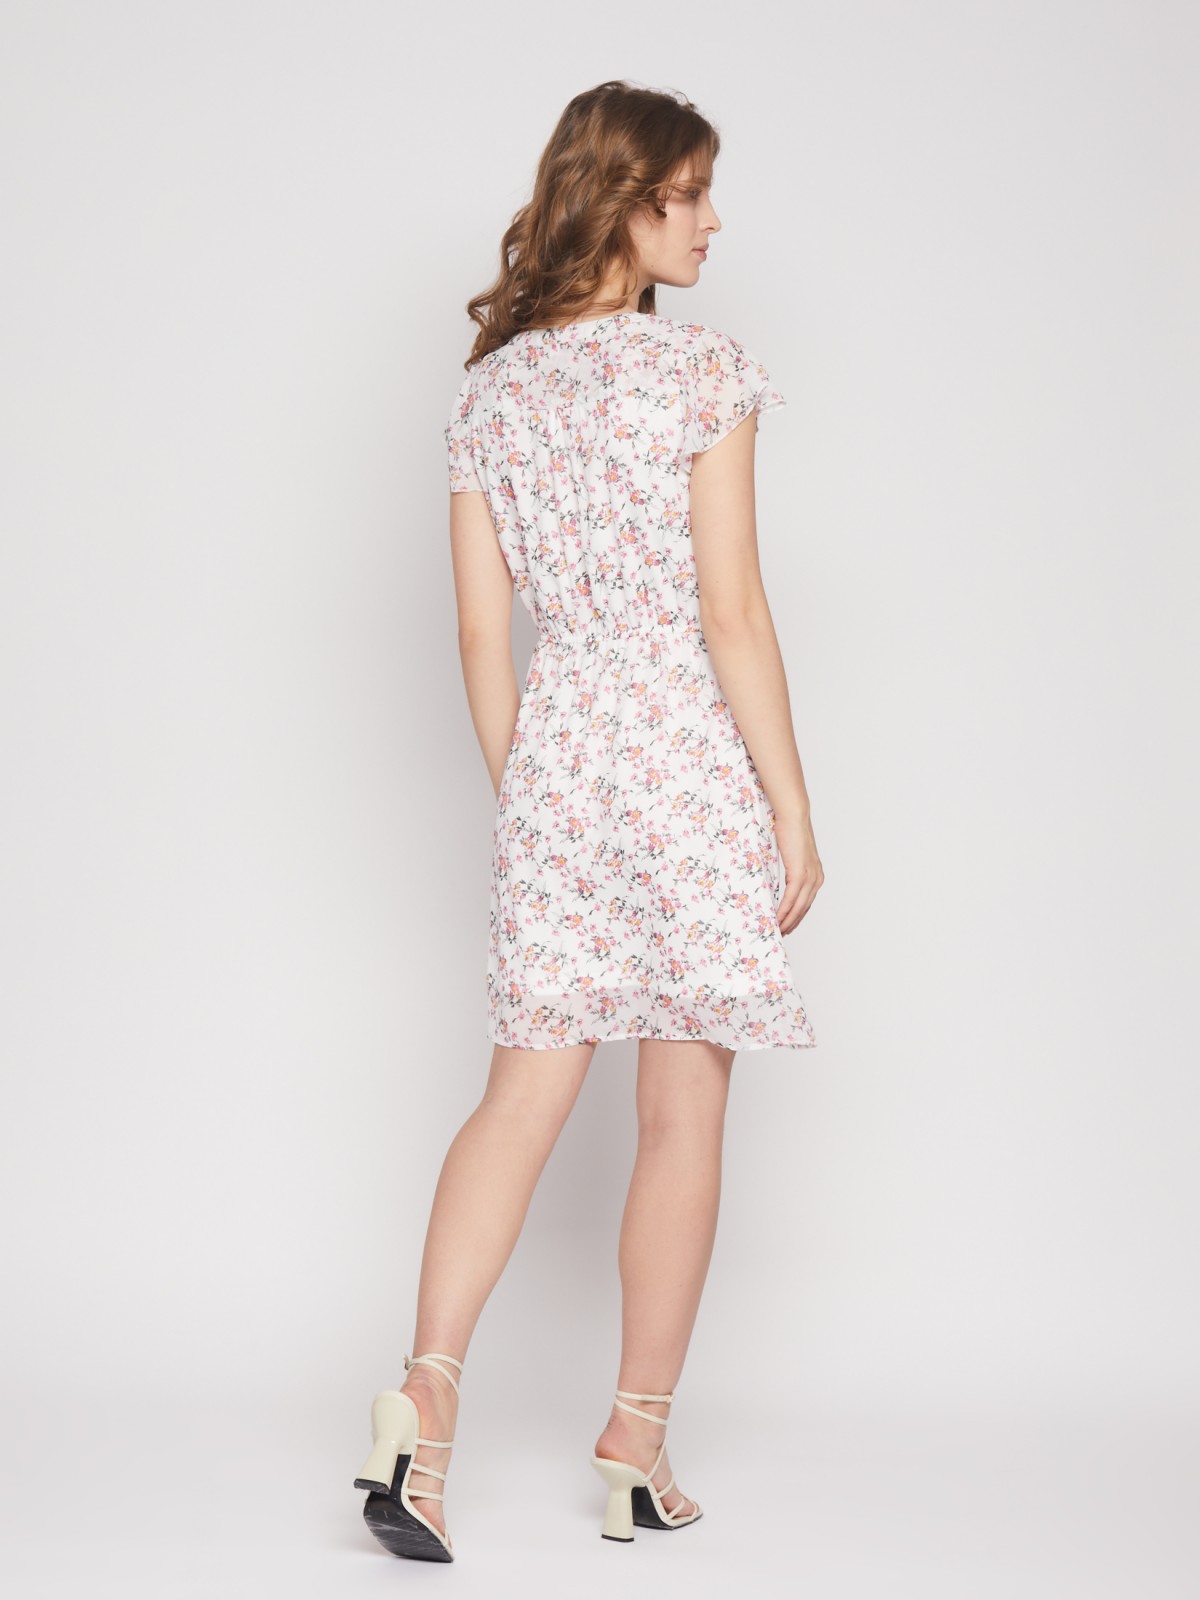 Шифоновое платье длины мини с цветочным принтом